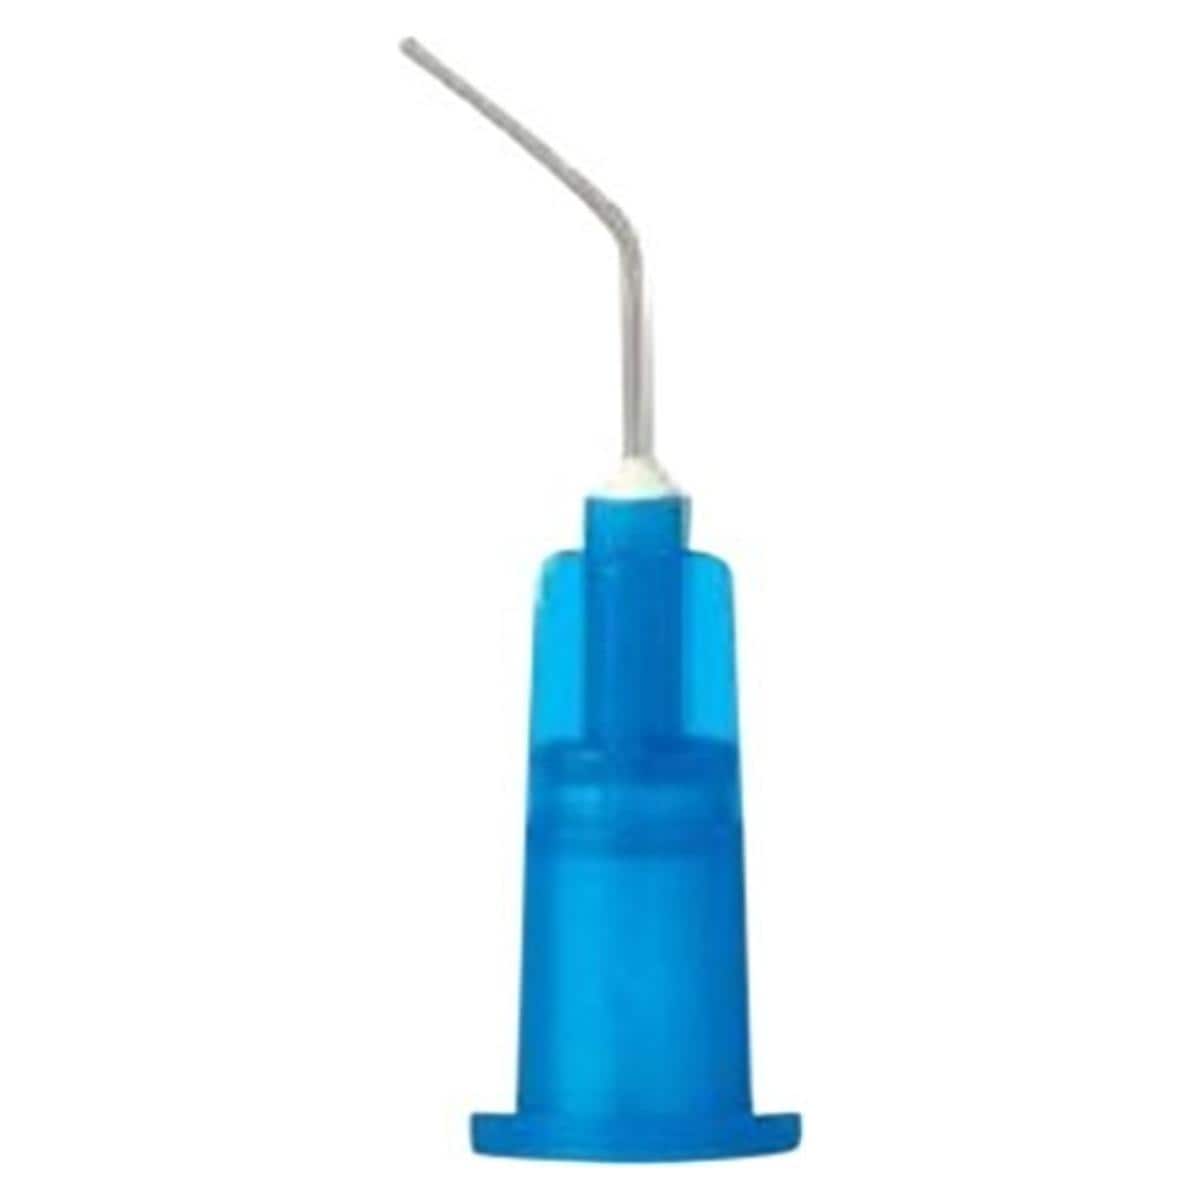 Disposable syringe tips 22G - X-80608N, 50 stuks